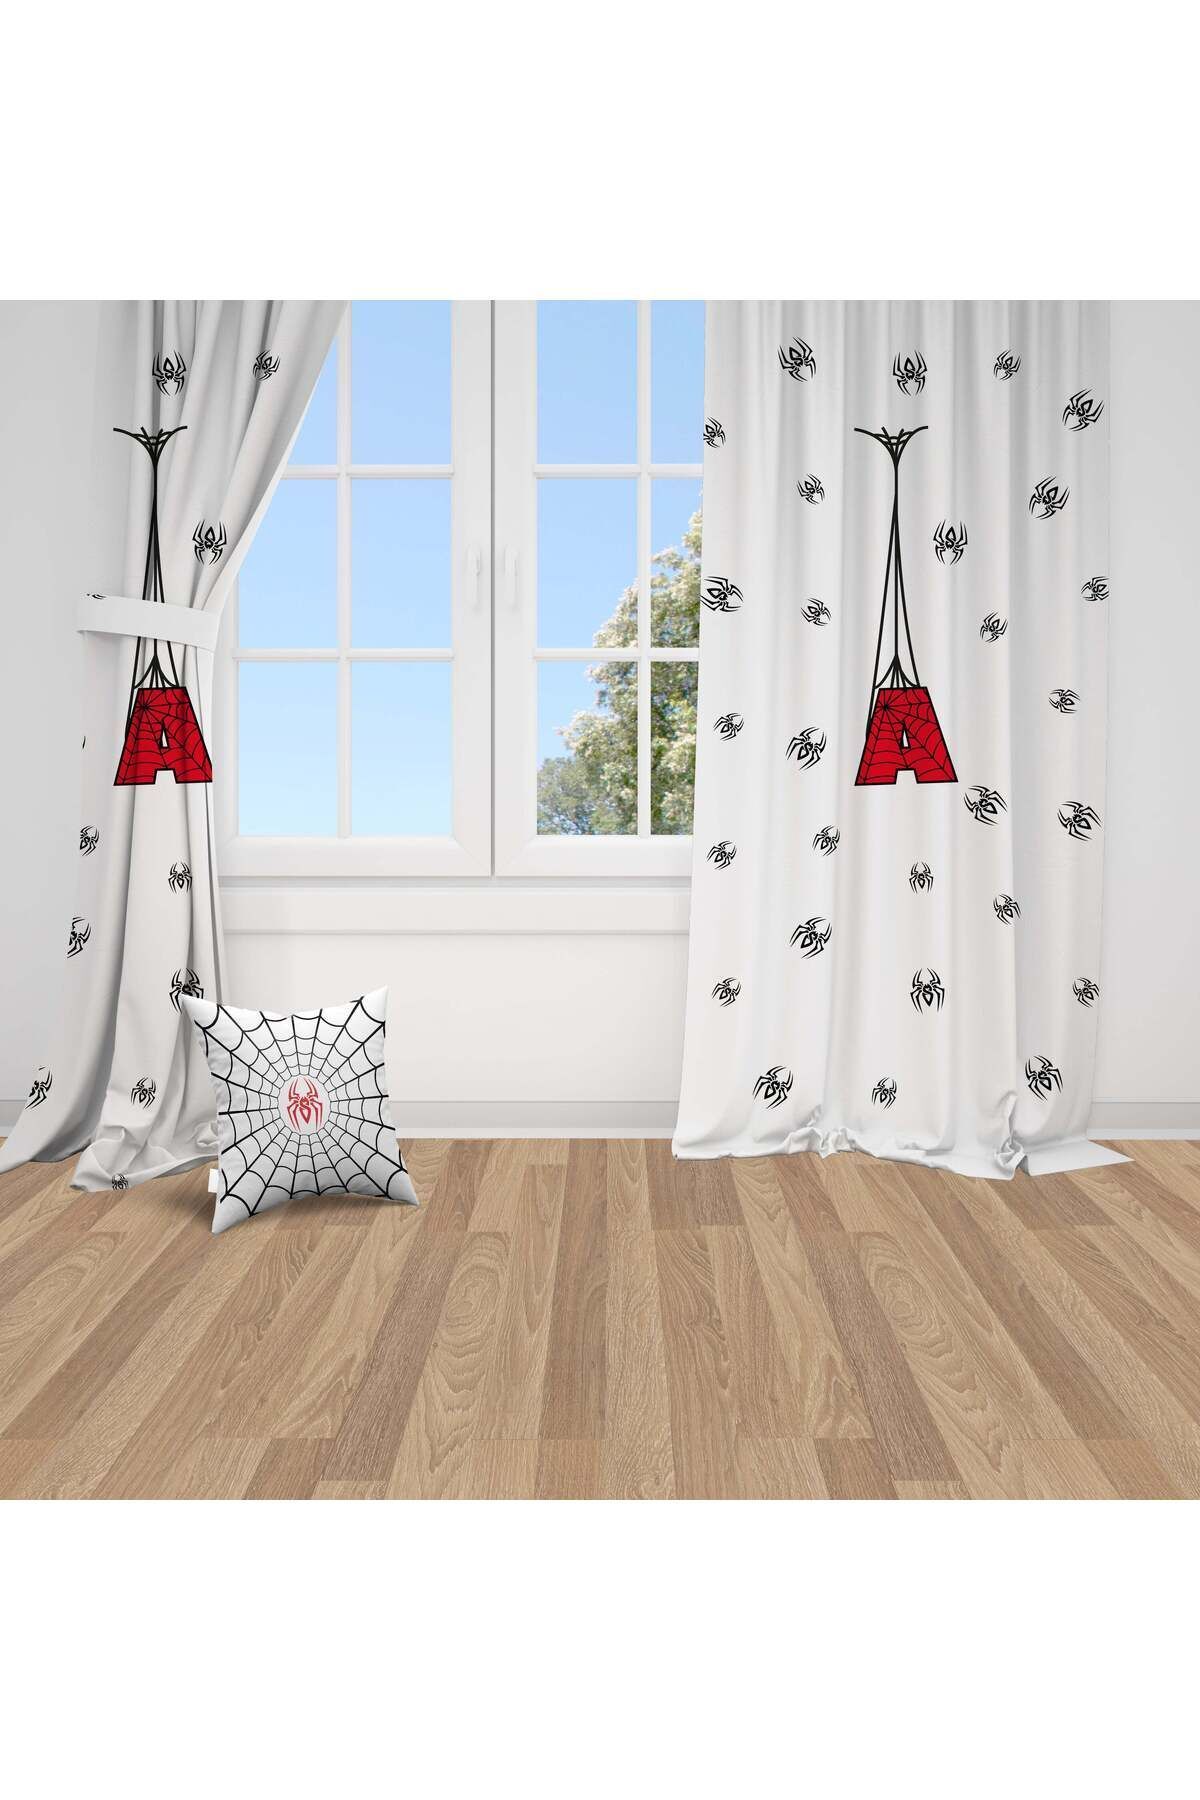 Bebemotto Örümcek Ağı, Ithal Kumaş, Beyaz, Kırmızı, Çocuk Odası, Bebek Odası Fon Perde - 1 Kanat